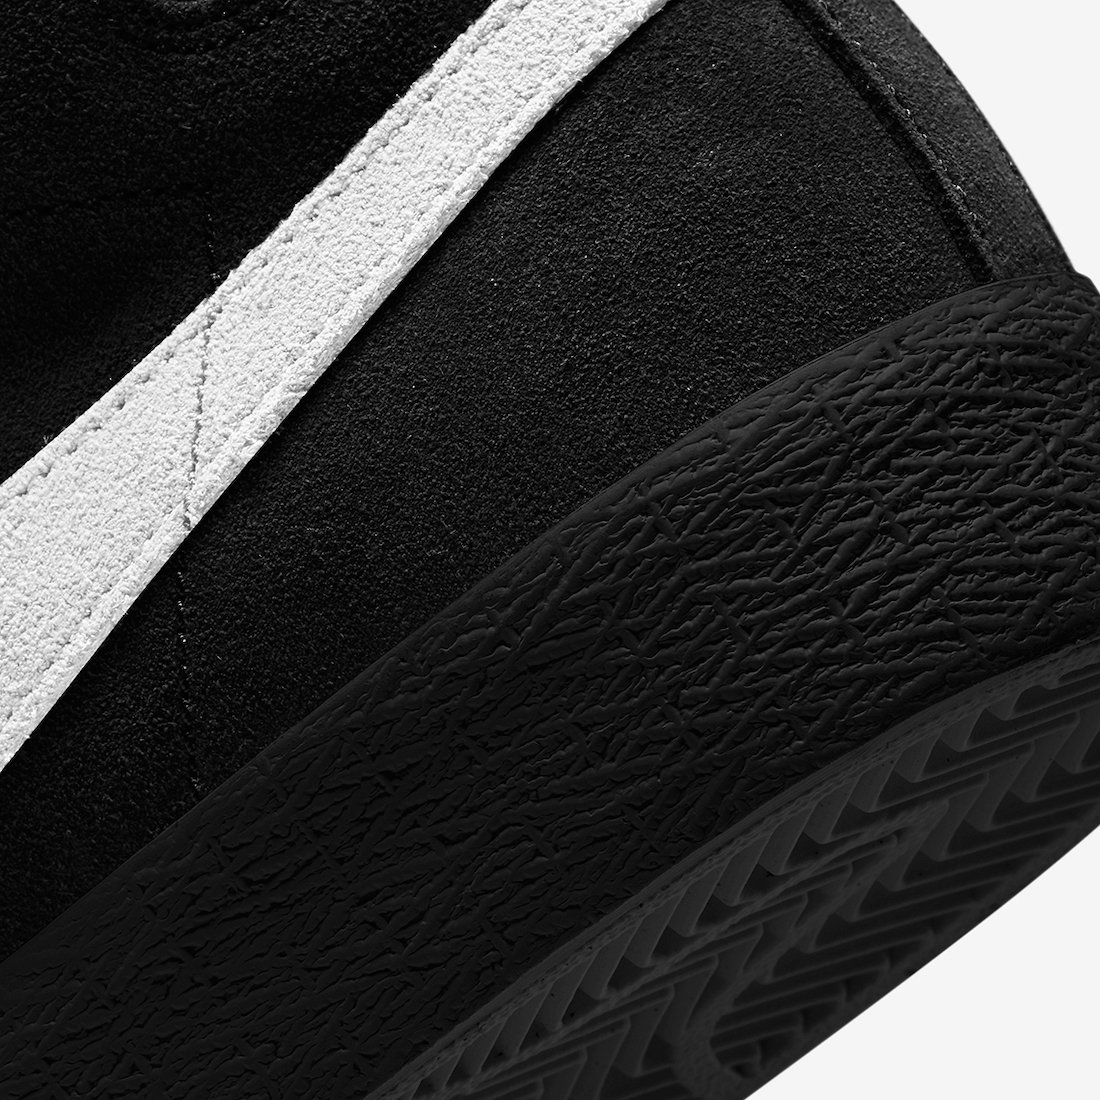 Nike SB Blazer Mid Black Suede 864349-007 Release Date Info